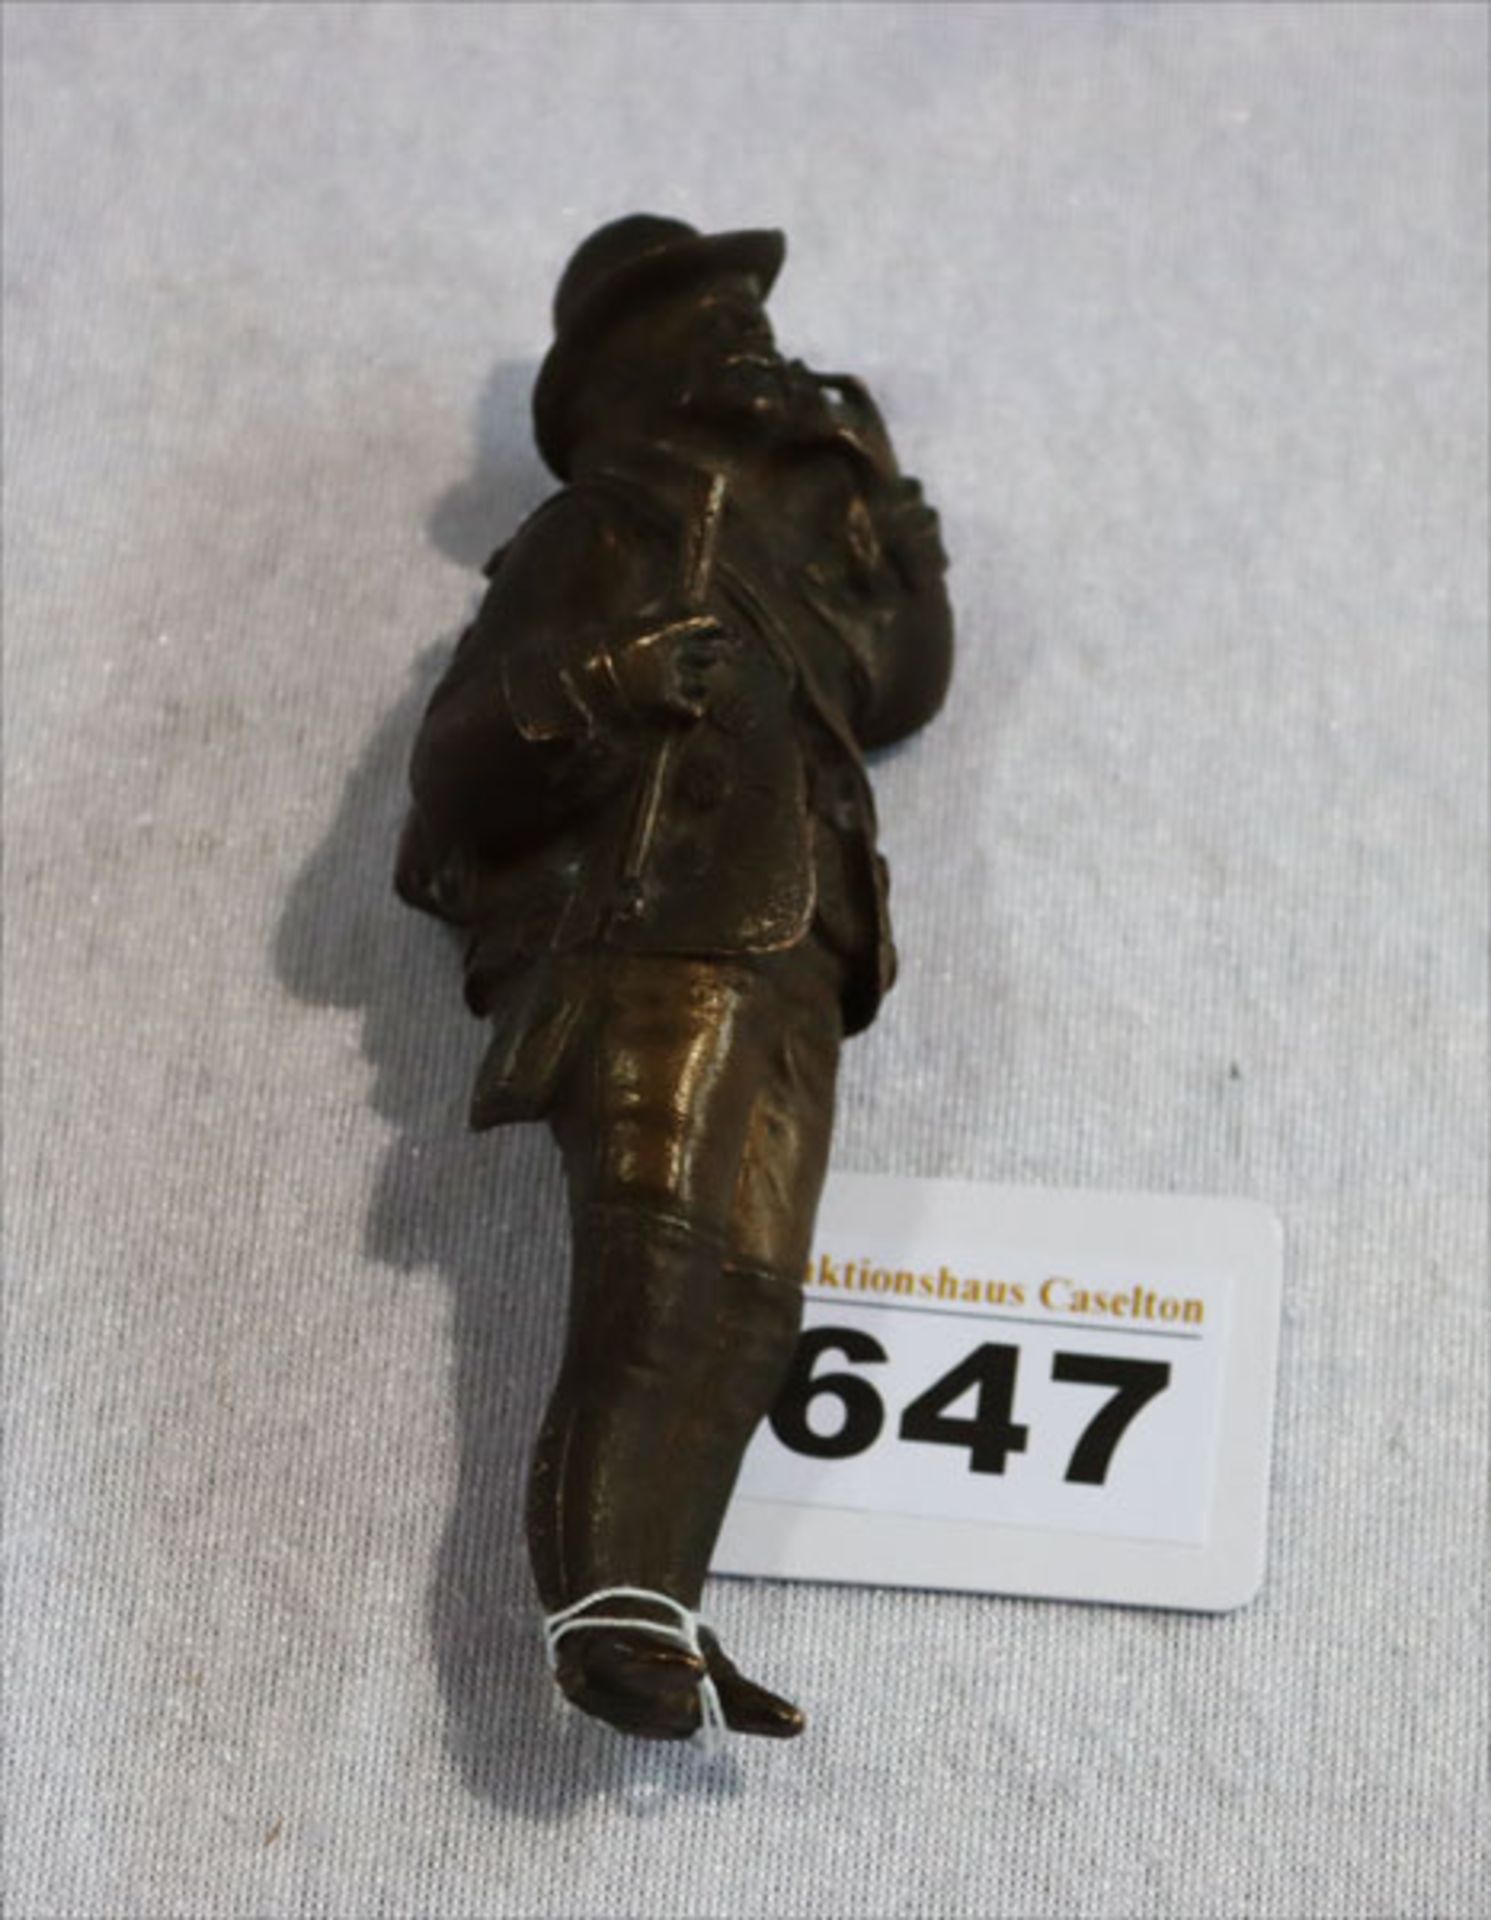 Bronzefigur 'Jäger', H 11,5 cm, teils beschädigt